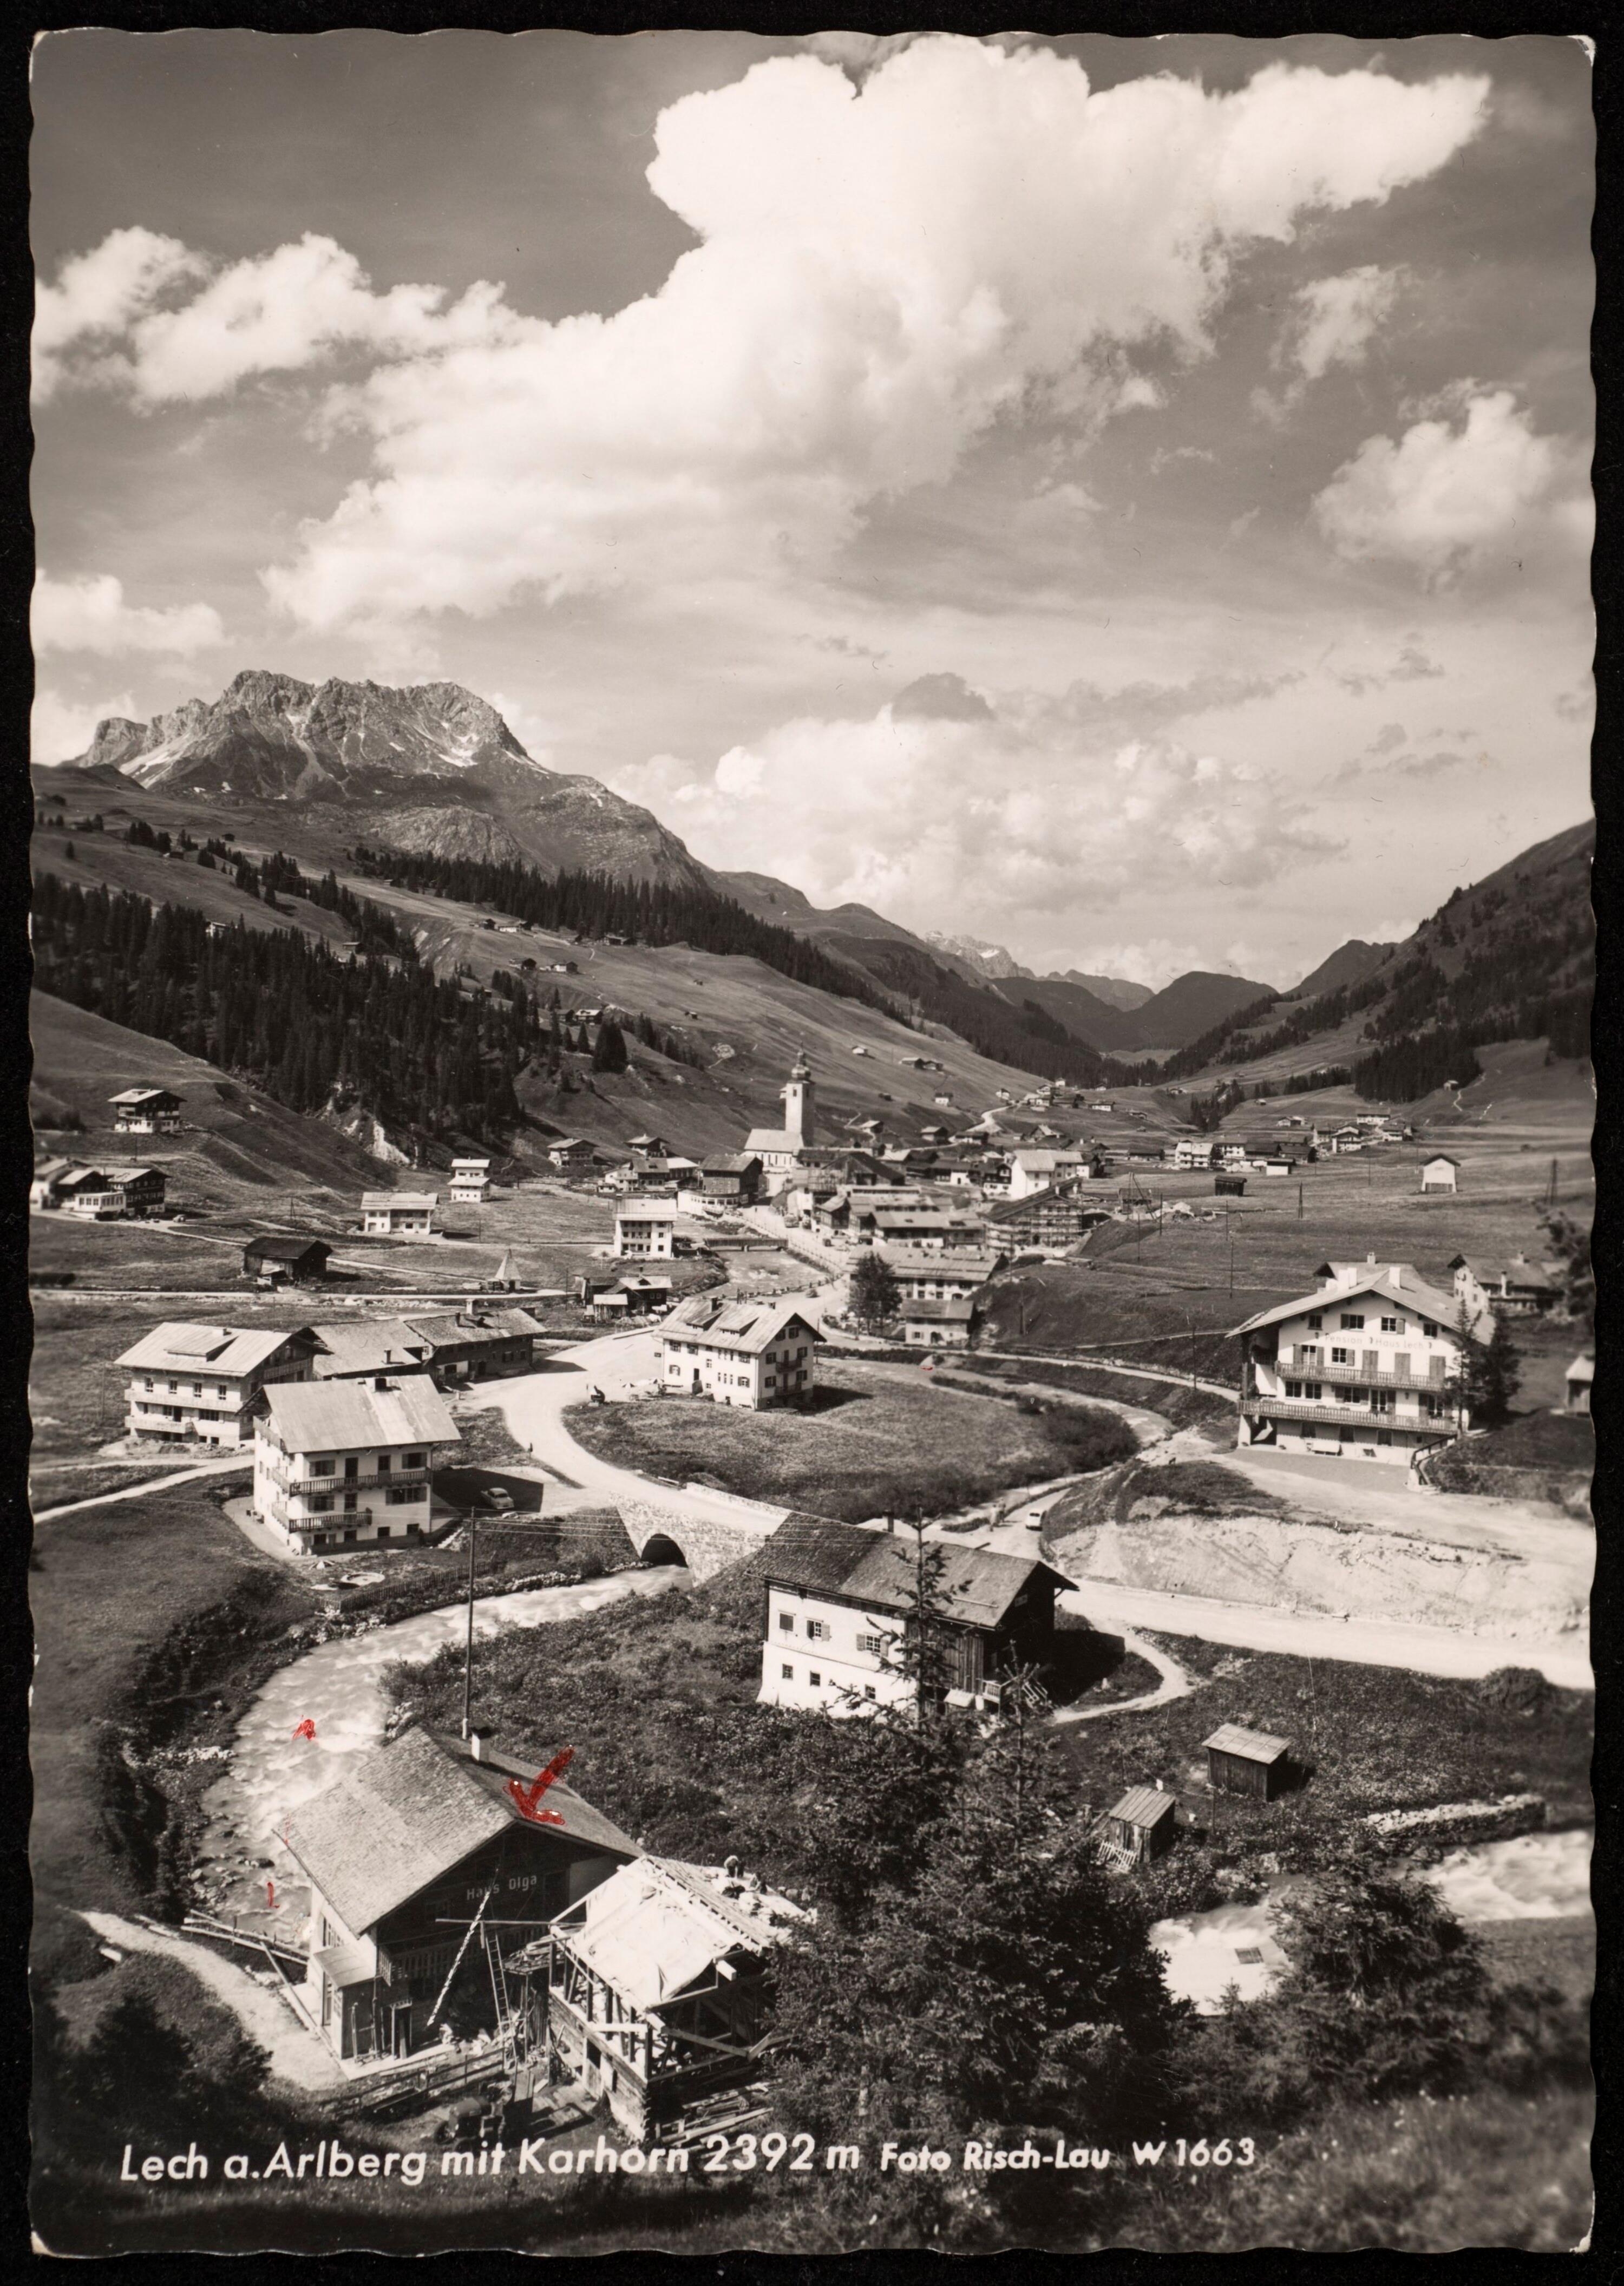 Lech a. Arlberg mit Karhorn 2392 m></div>


    <hr>
    <div class=